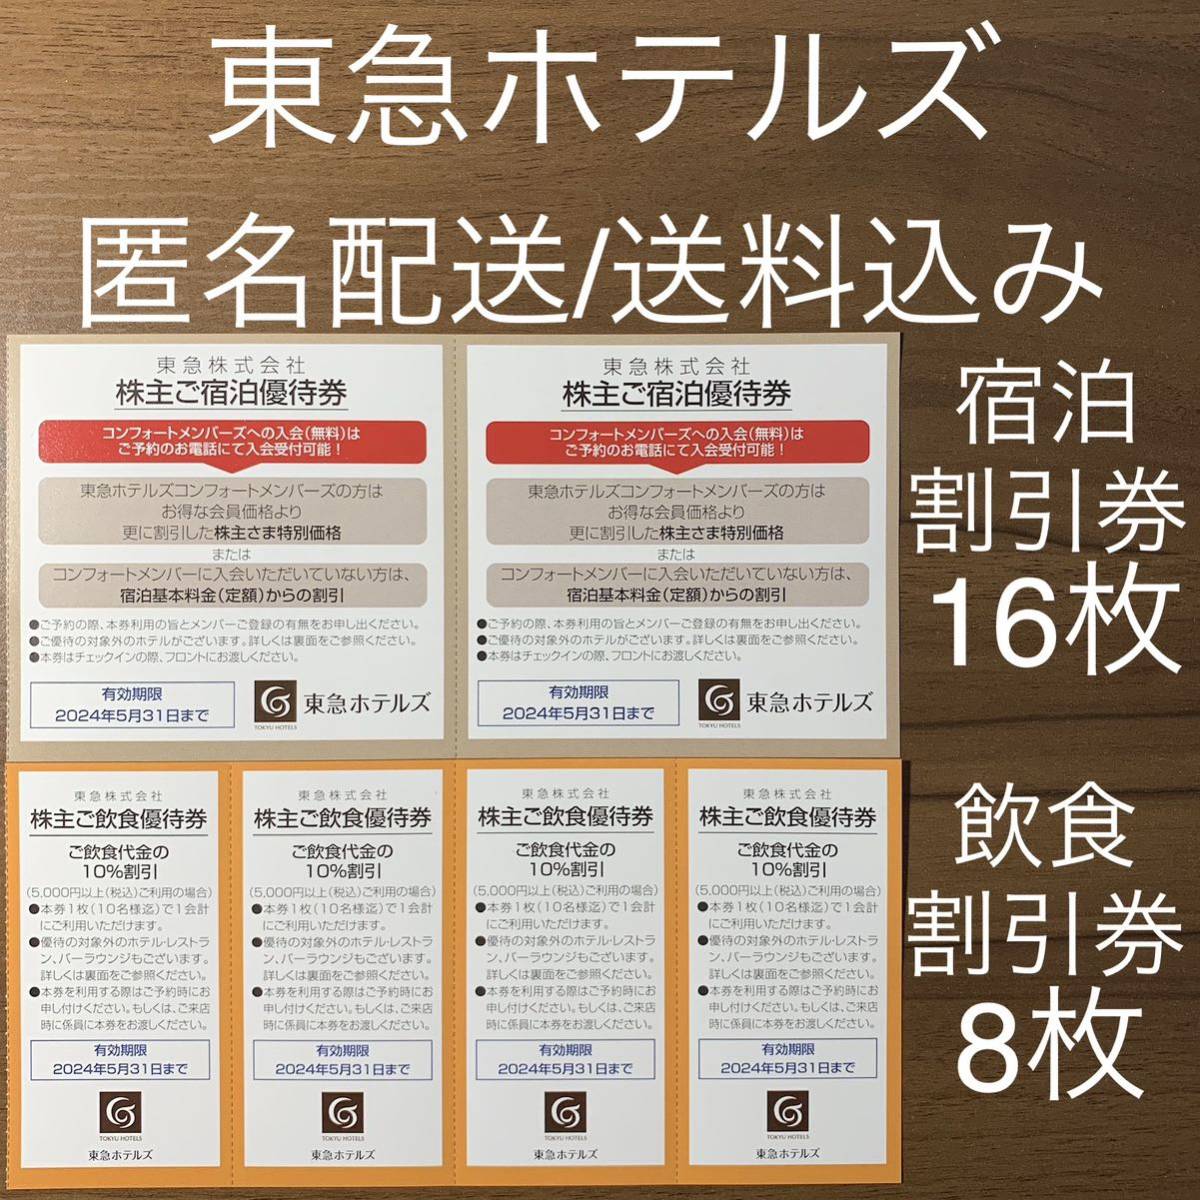 Tokyu Акционеров Представители билеты Tokyu Hotels размещение и скидки с дисконтом купона анонимная доставка